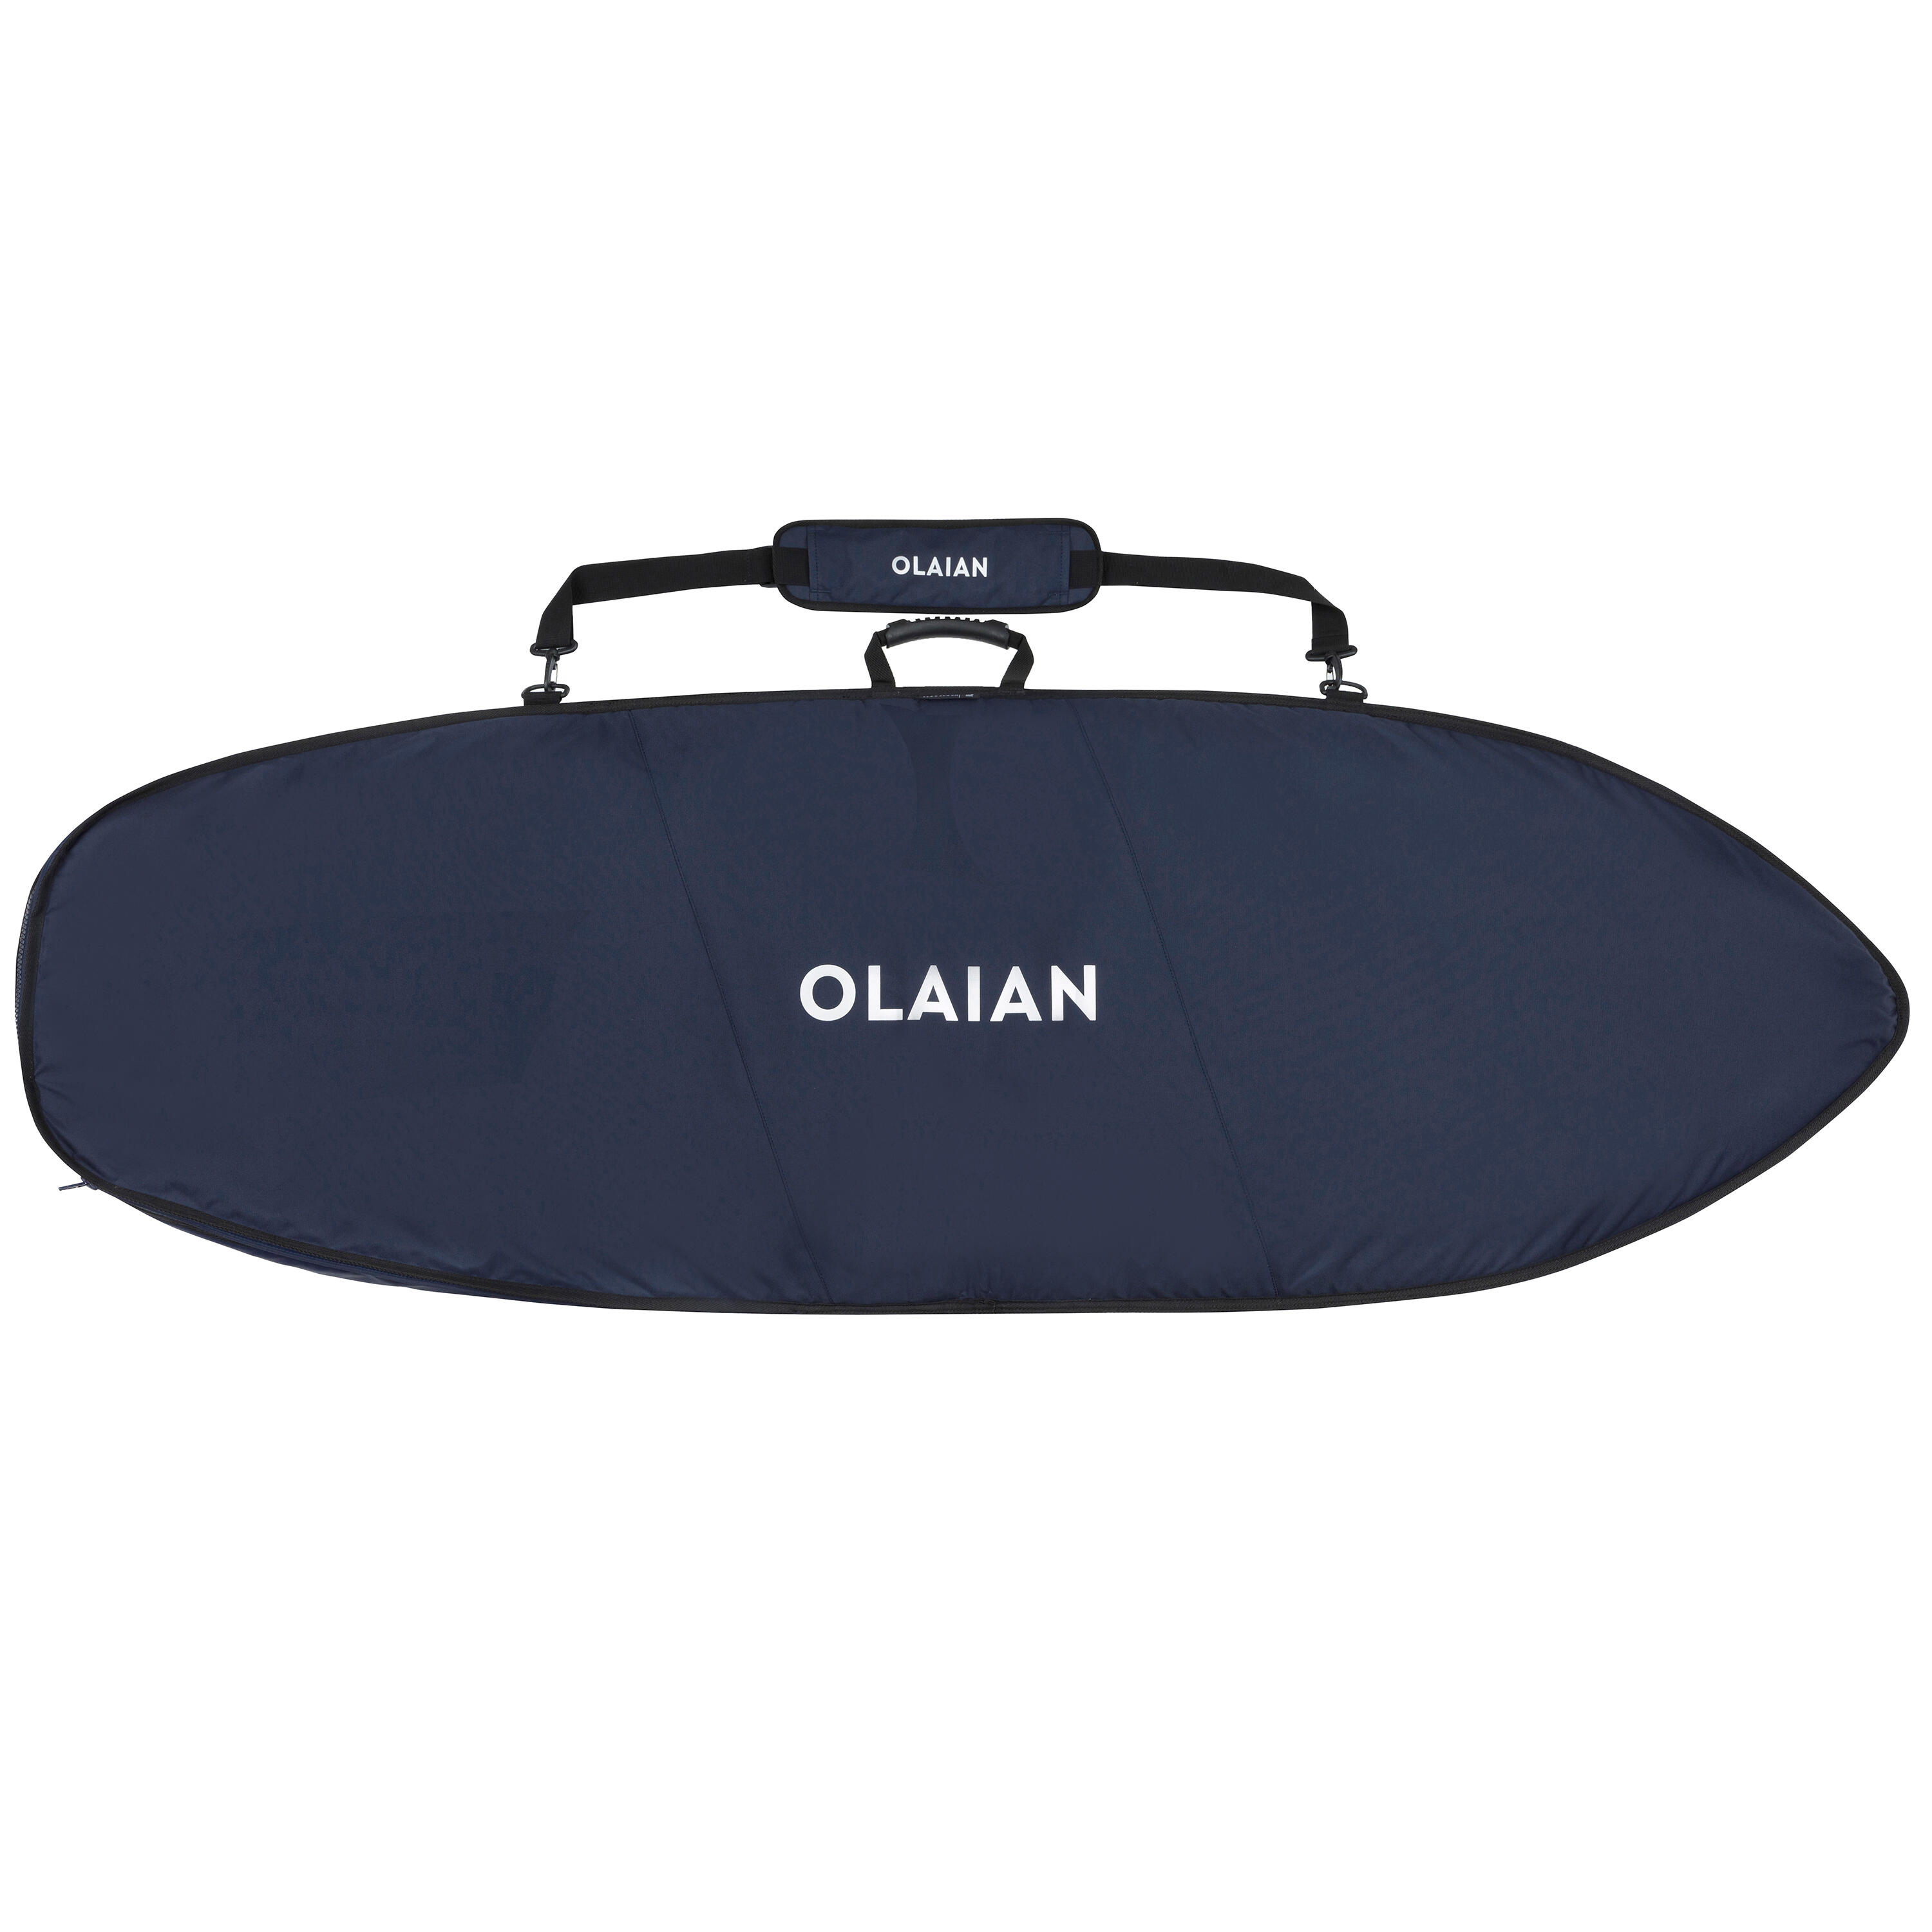 OLAIAN Boardbag Surfboard 900 max. 6'1